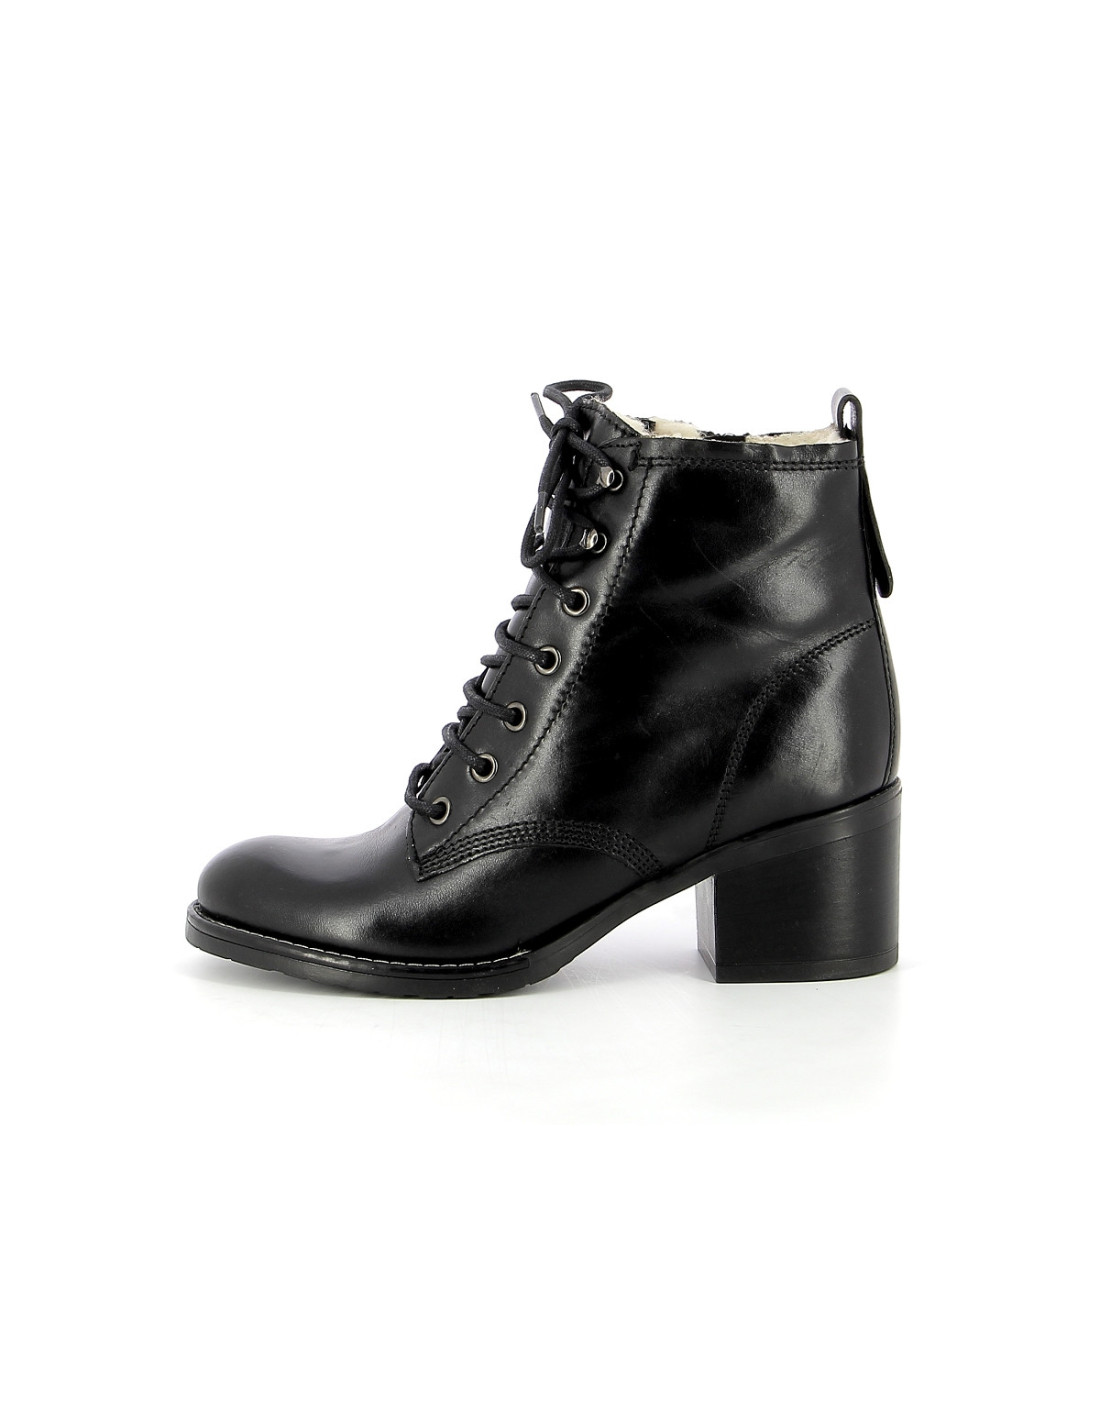 Boots & bottines Femme FREEFLEX 38414 Noir Noir Taille 37 Couleur fournisseur Noir